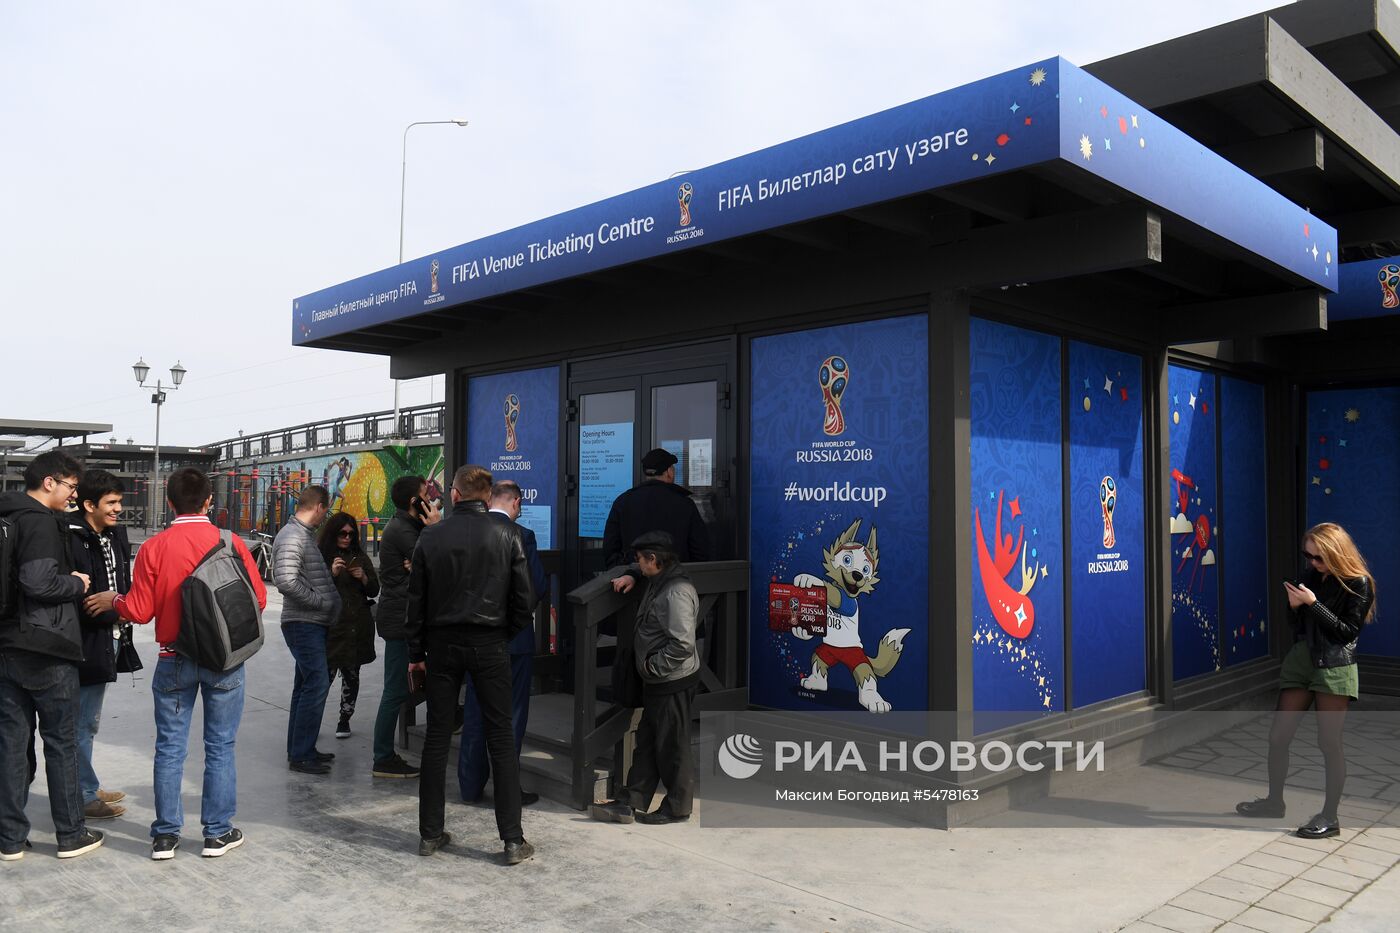 Главный билетный центр FIFA в Казани